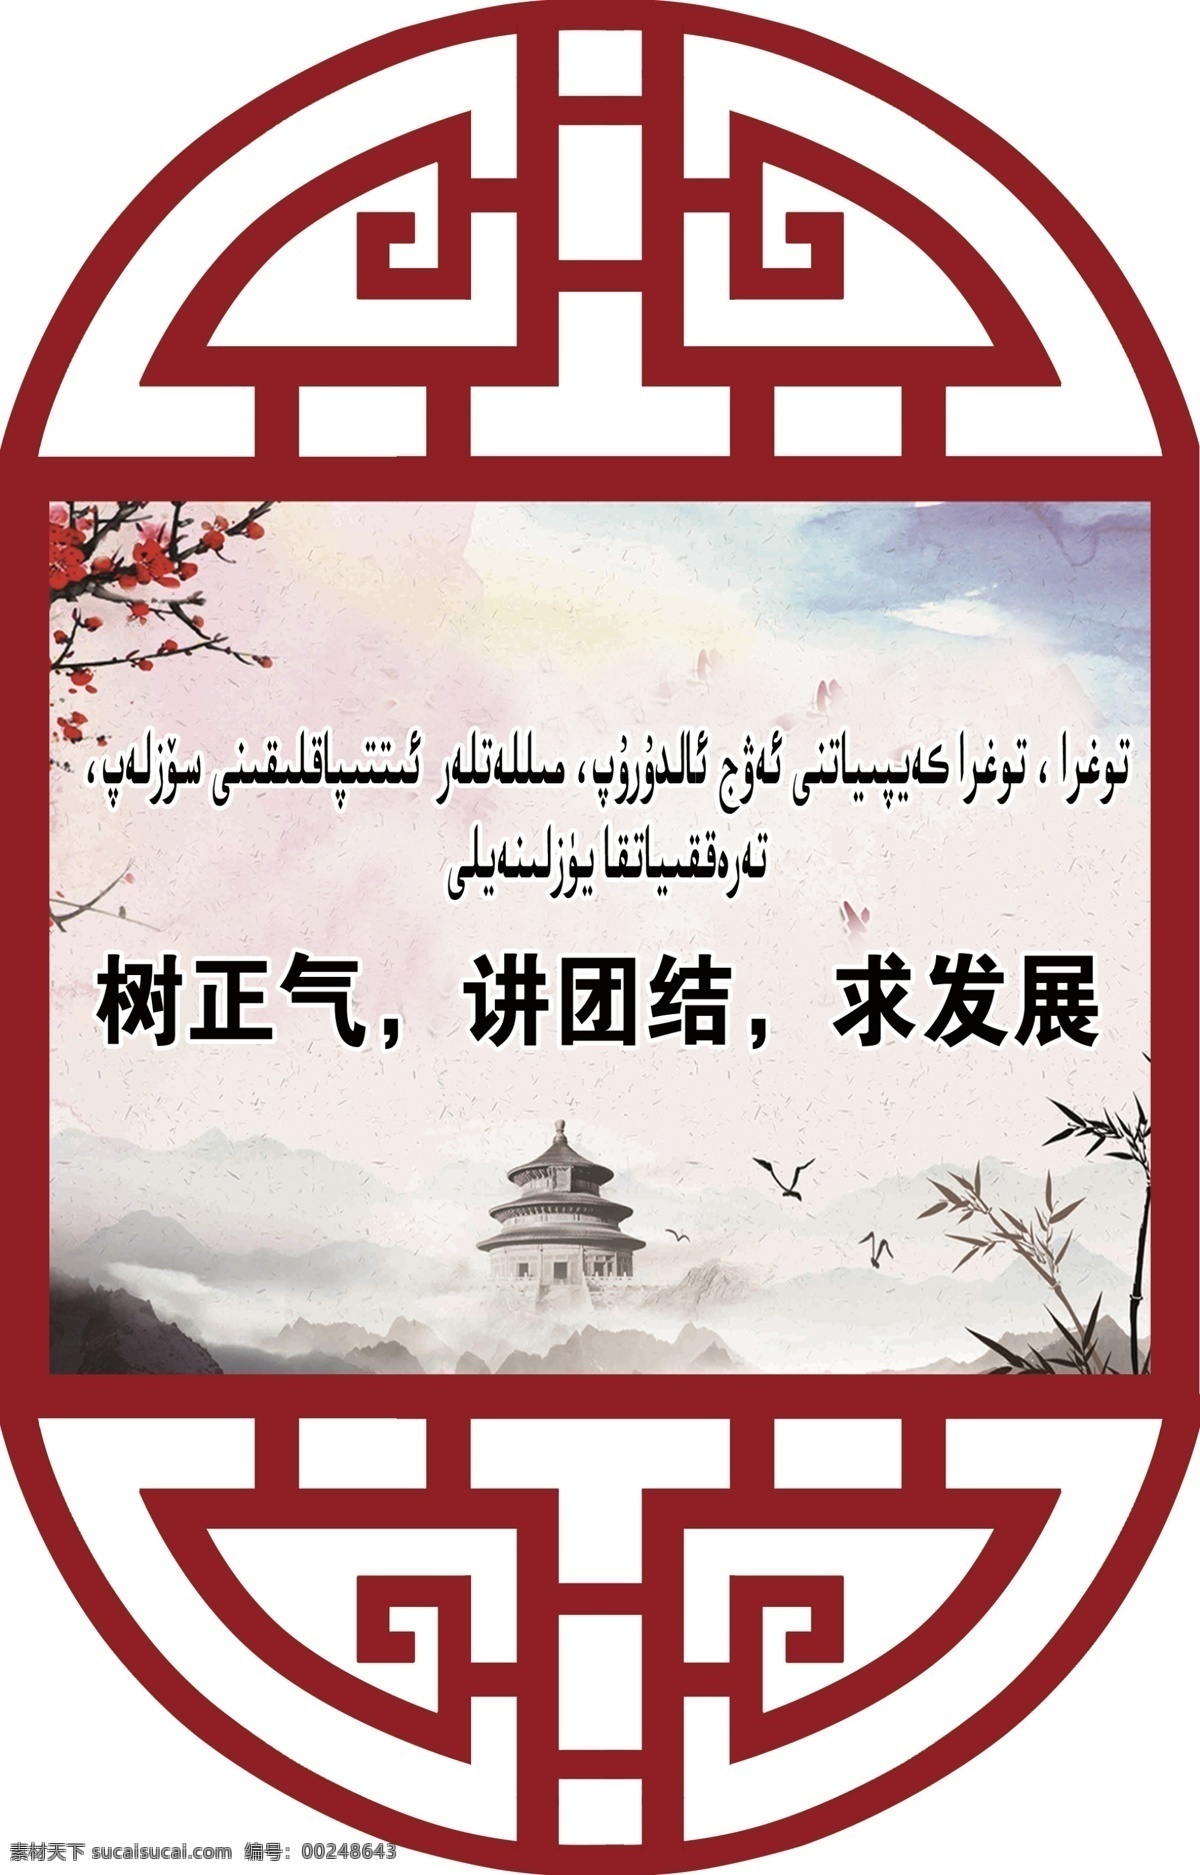 楼道标语牌 异形牌 中国风雕刻 中国风标语牌 室内广告设计